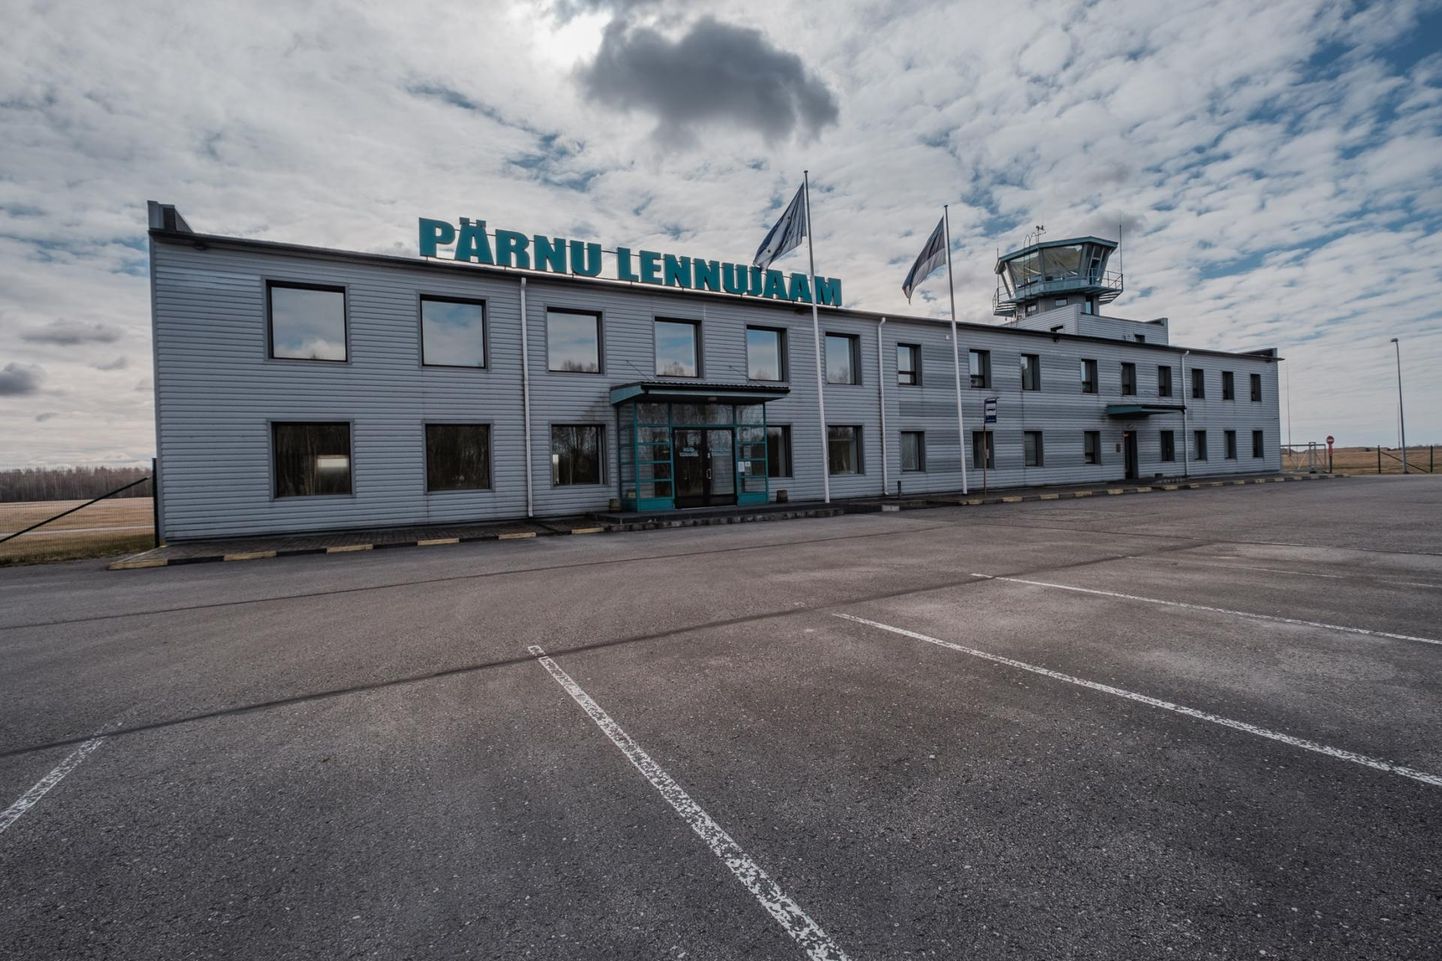 Tellija soovib laiendada Pärnu lennujaama reisiterminali ja renoveerida senise hoone koos ühendusteede, platside ja muude vajalike rajatistega.